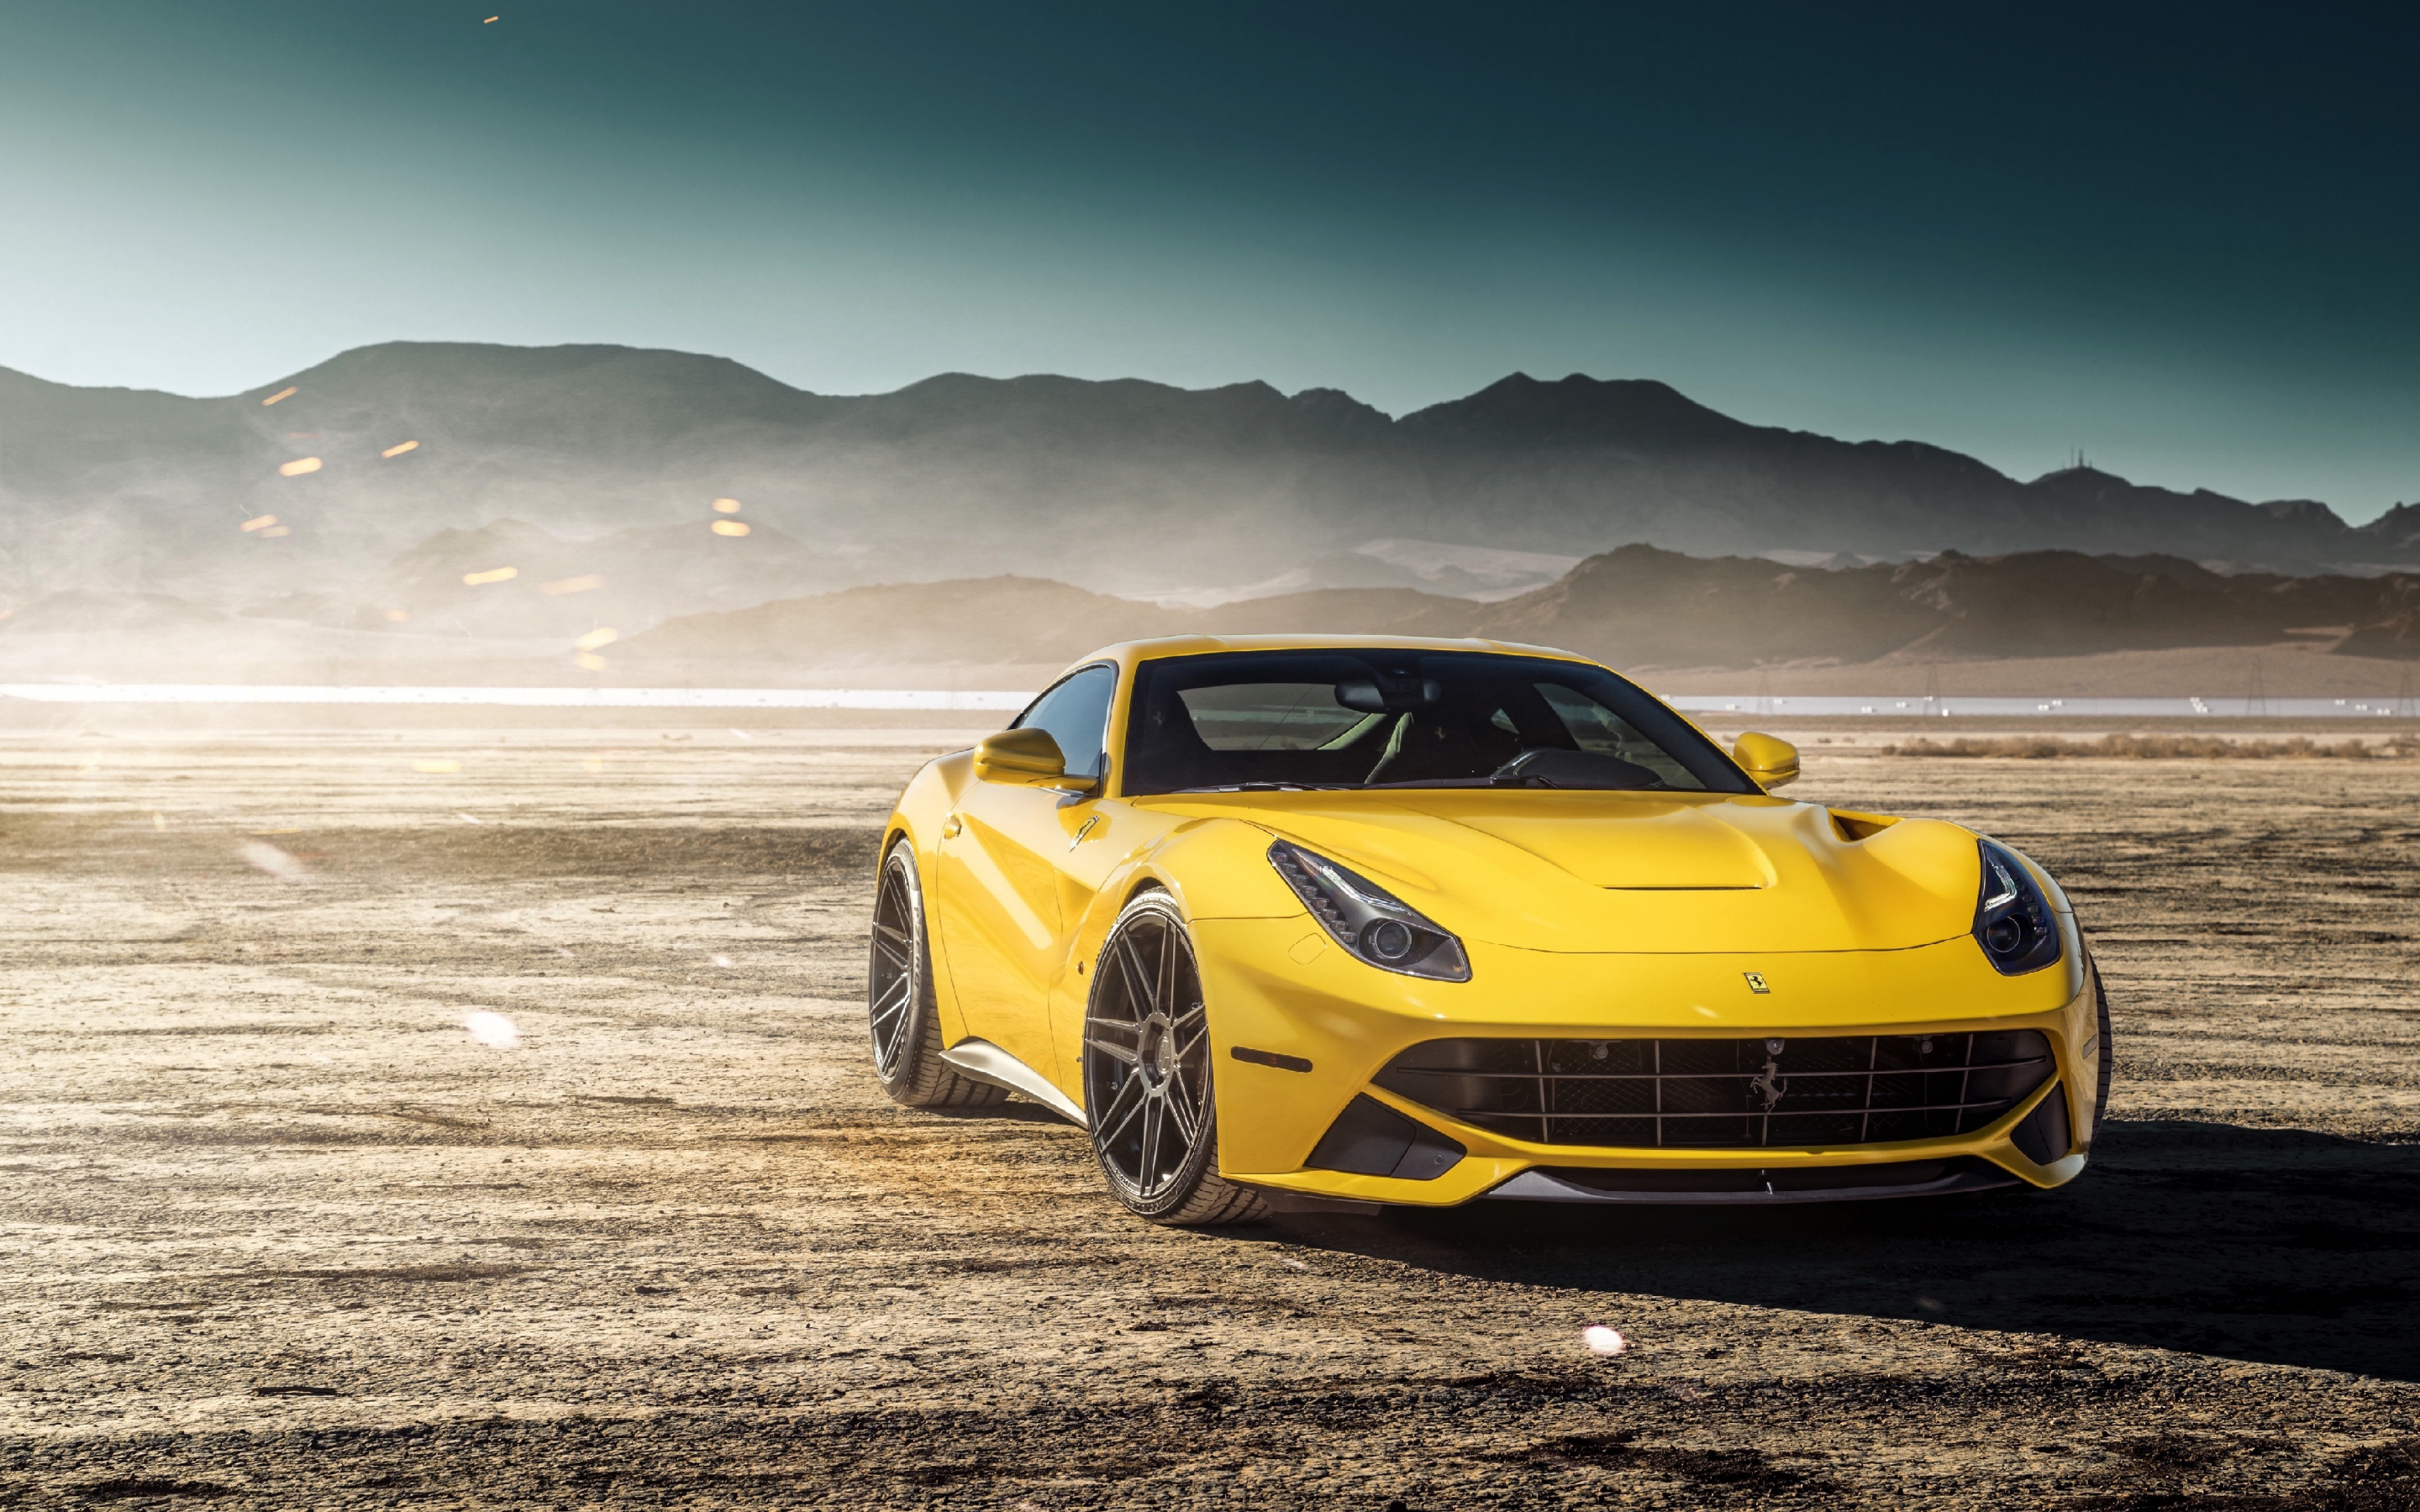 Luxurious, sports car, Ferrari F12berlinetta, 2880x1800 wallpaper